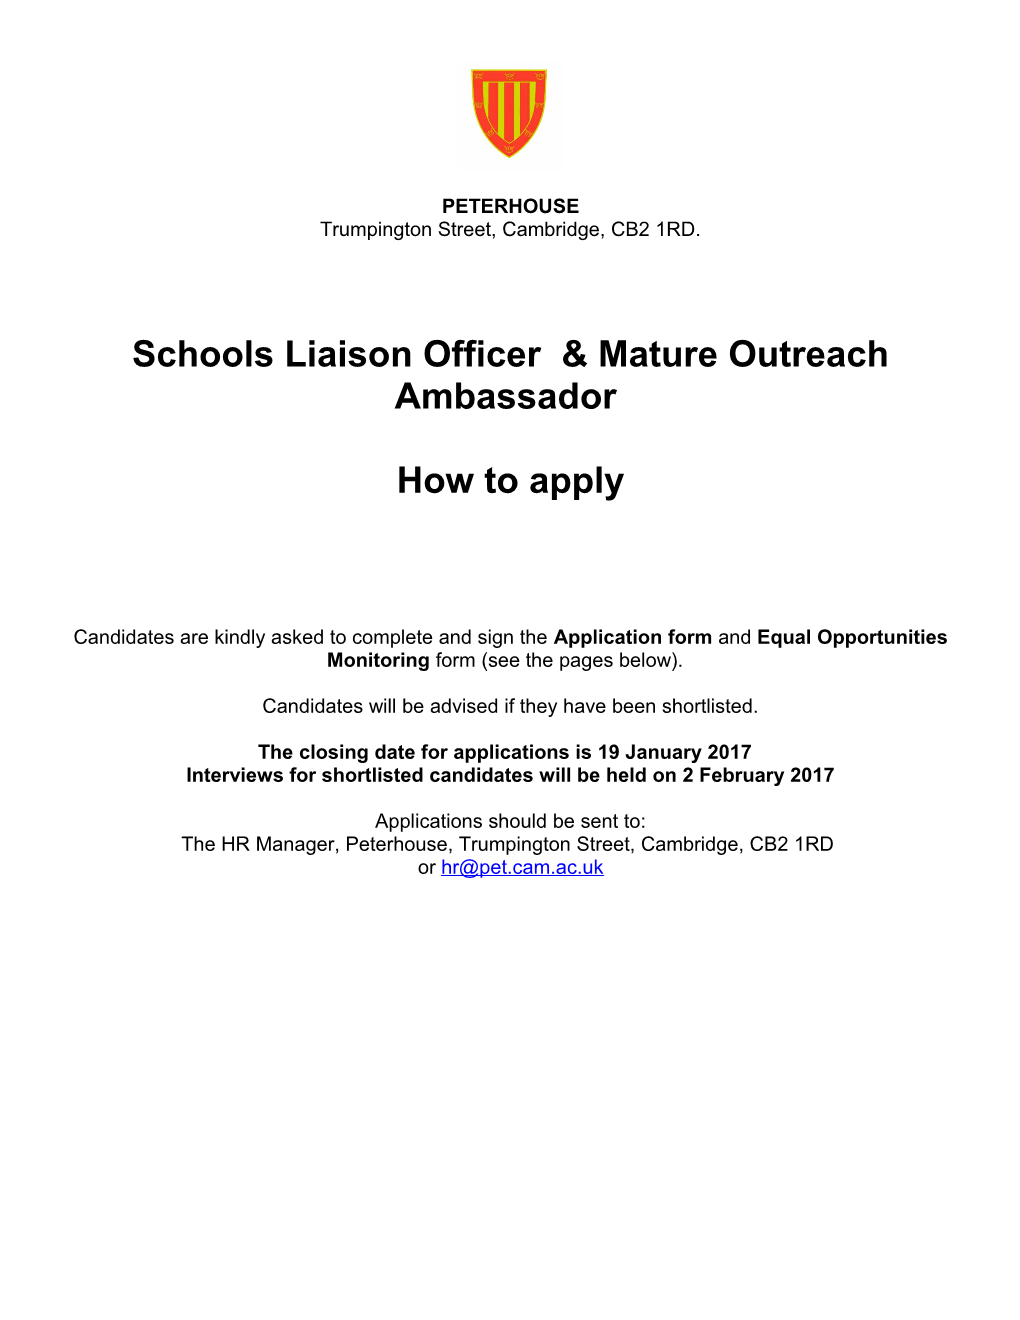 Schools Liaison Officer & Mature Outreach Ambassador